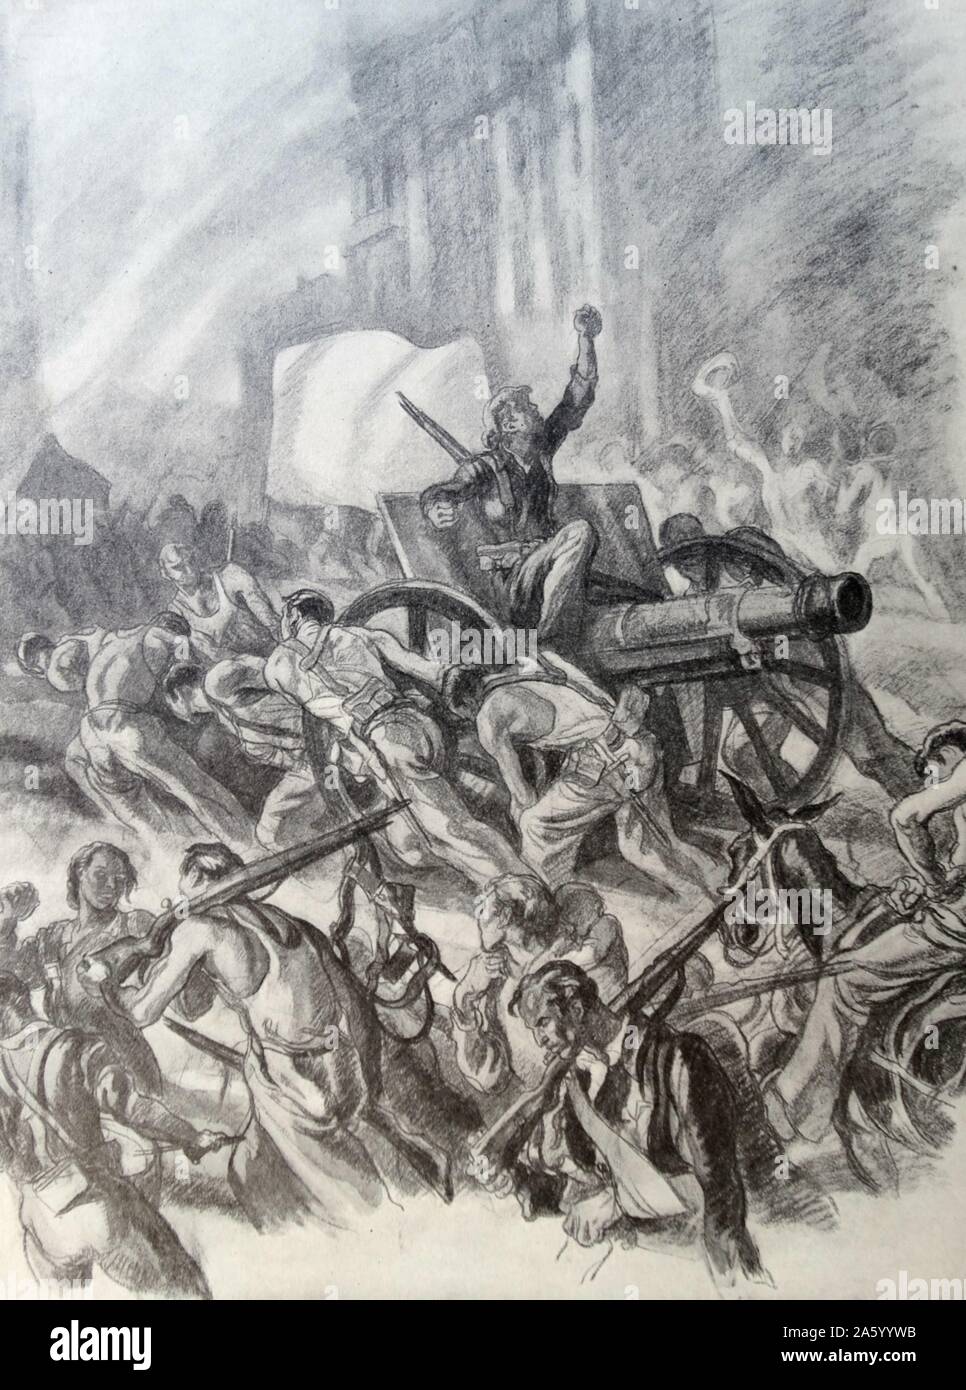 Propaganda-Illustration von Carlos Saenz De Tejada Darstellung eine nationalistische Milizen, die Beschlagnahme einer Kanone während der Straßenkämpfe in den spanischen Bürgerkrieg. Datiert 1938 Stockfoto